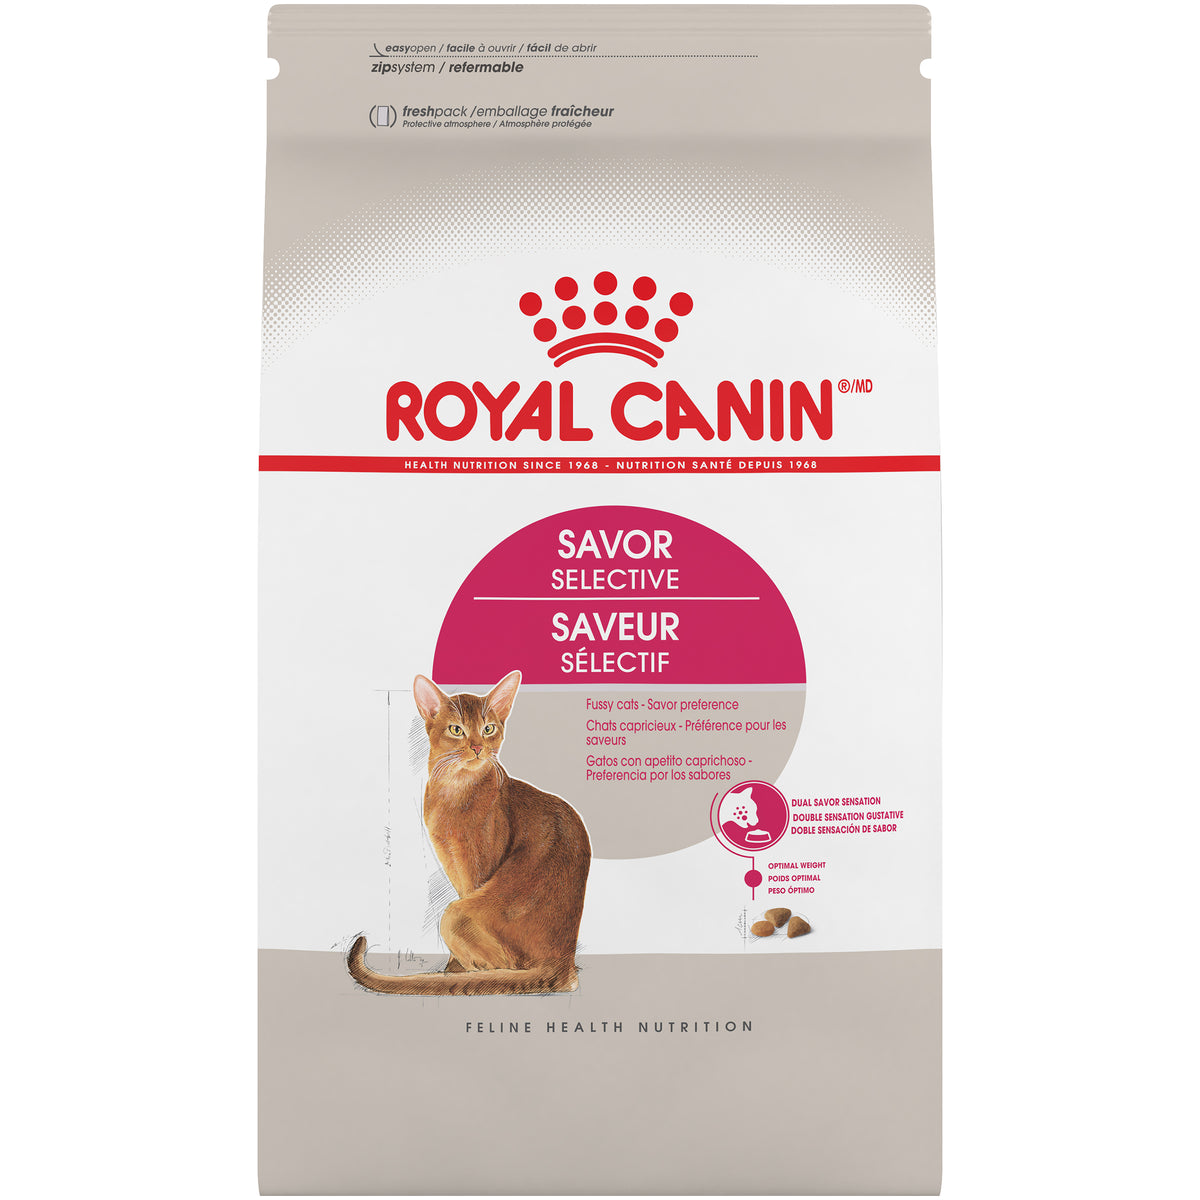 Royal Canin® Feline Health Nutrition™ Savor Selective Dry Cat Food, 6 lb